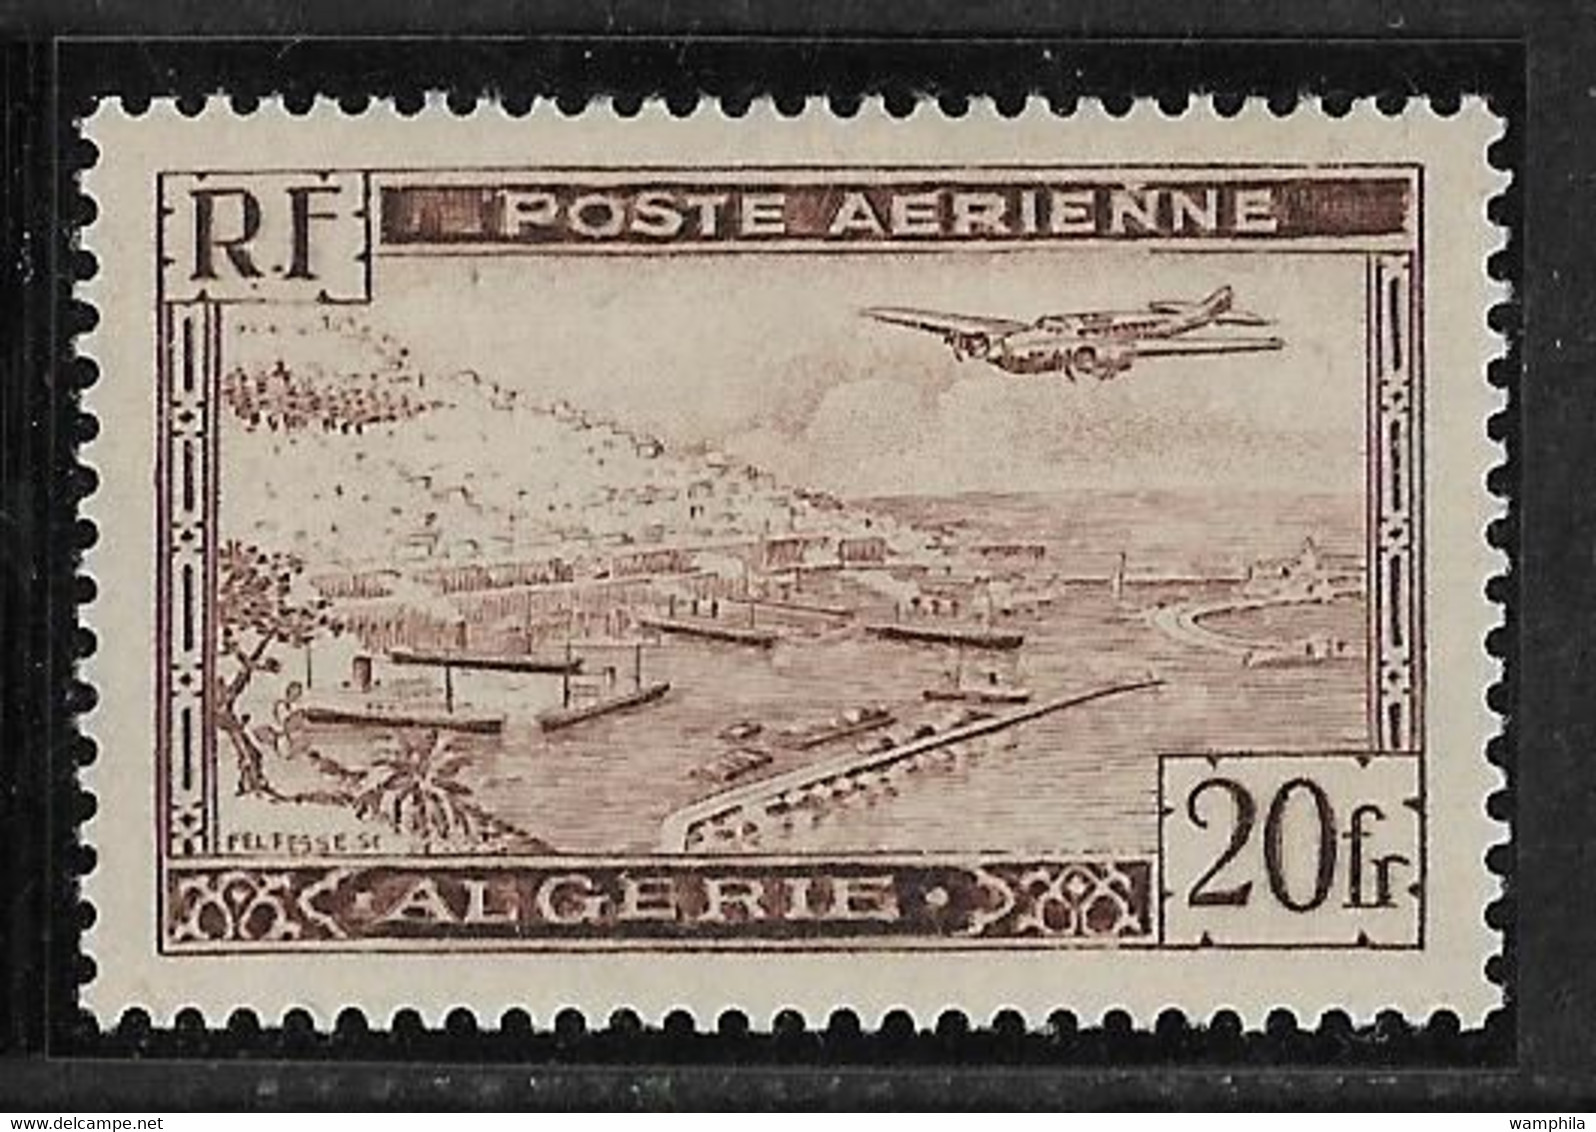 Algérie, Poste Aérienne 4A *, Cote 220€, Voir Description - Luchtpost